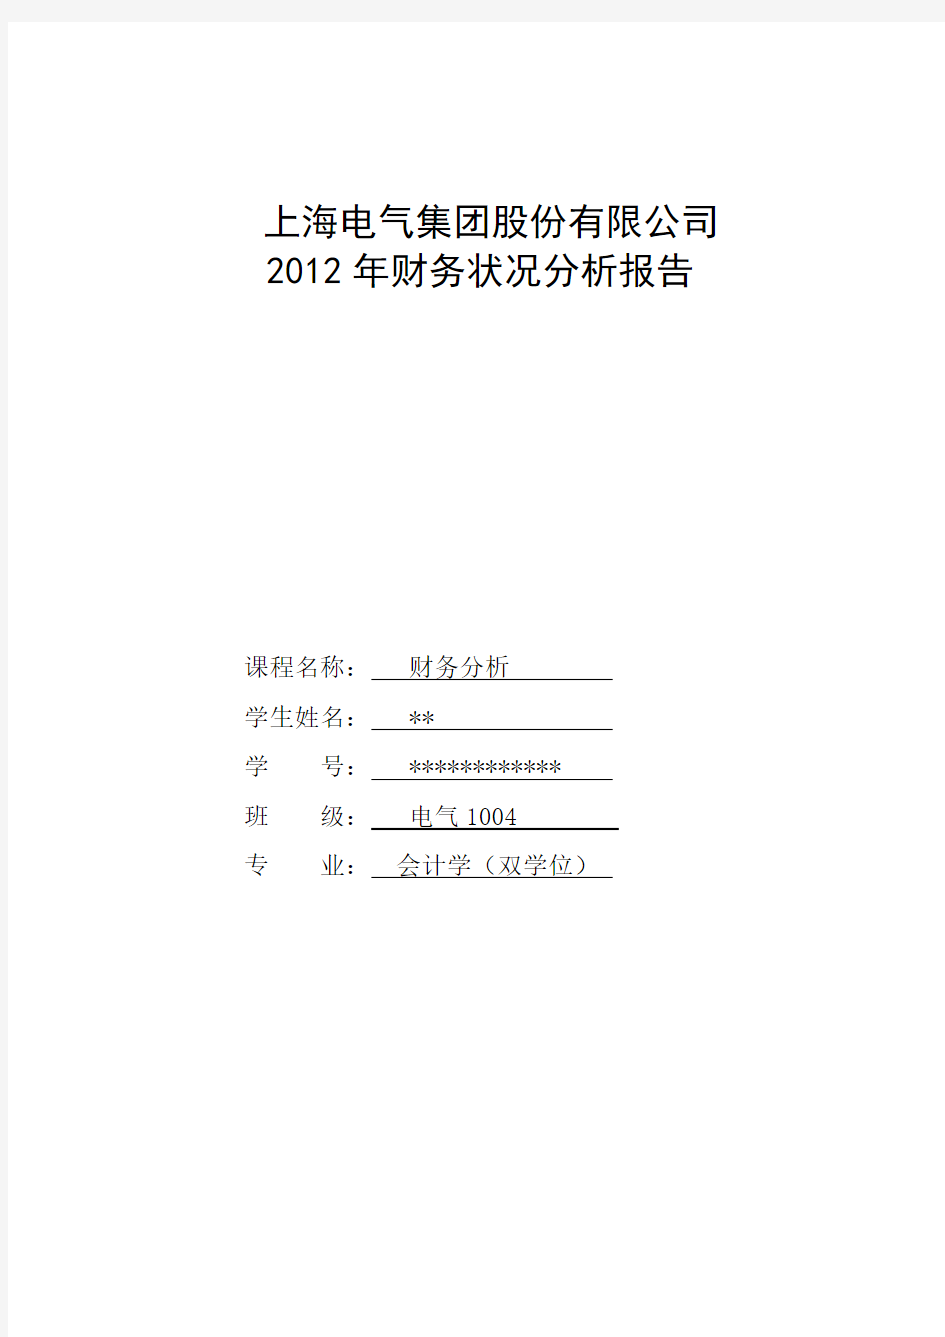 上海电气集团股份有限公司2012年度财务分析报告剖析